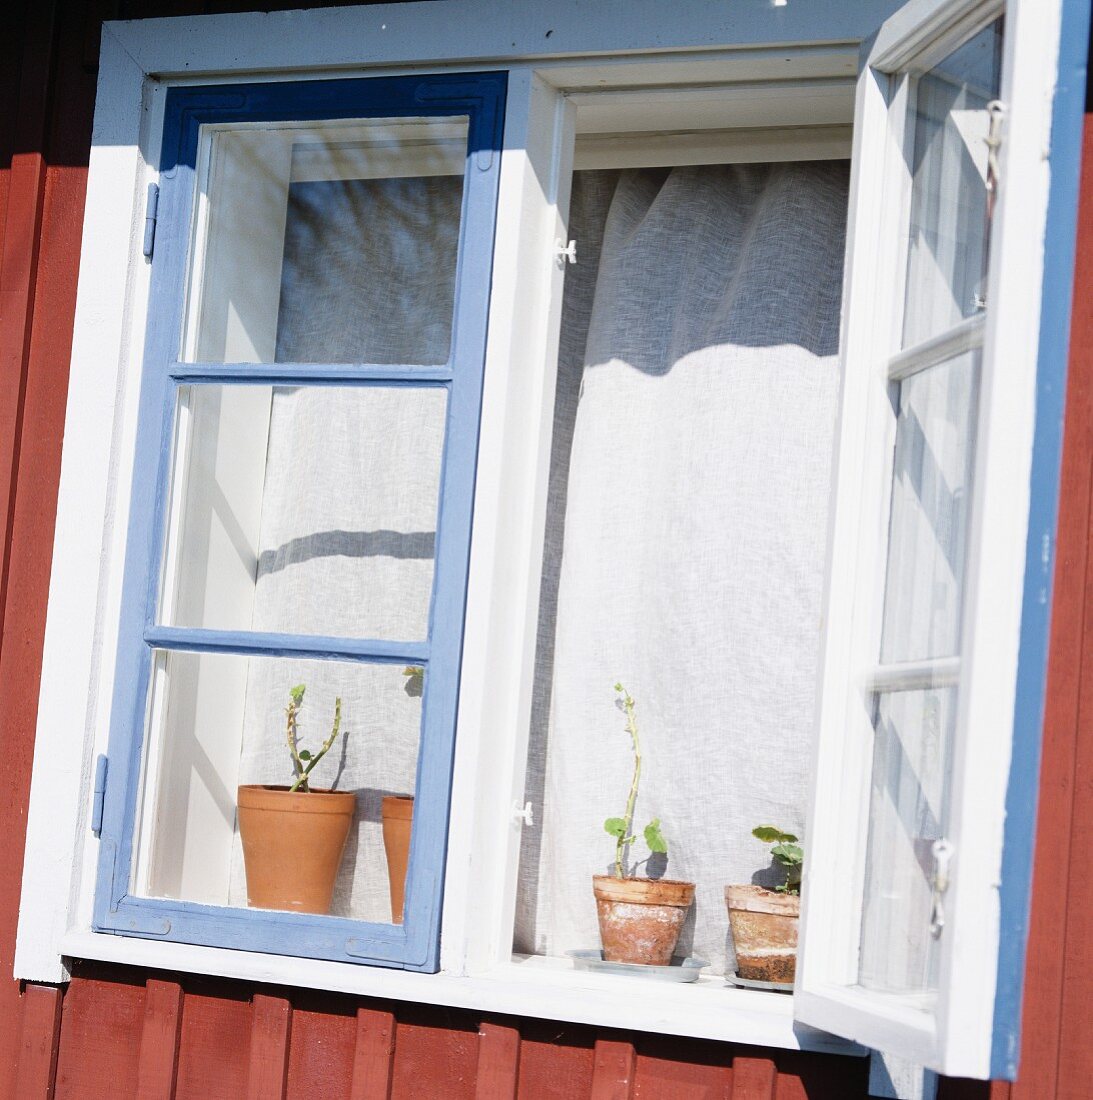 Offenes Fenster eines traditionellen, schwedischen Hauses im Sonnenlicht